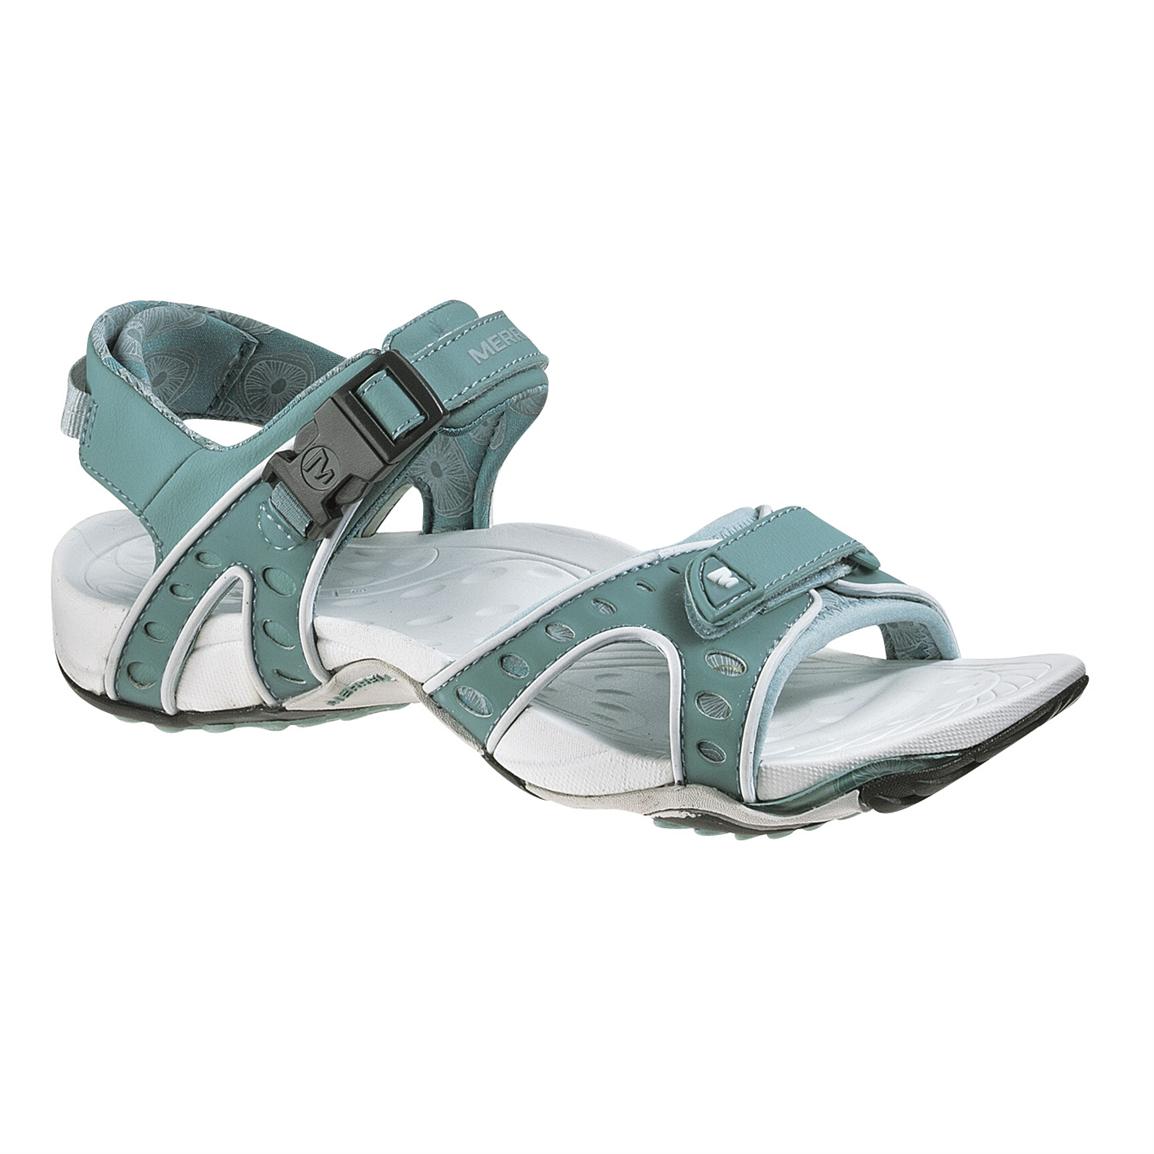 merrell sport sandals